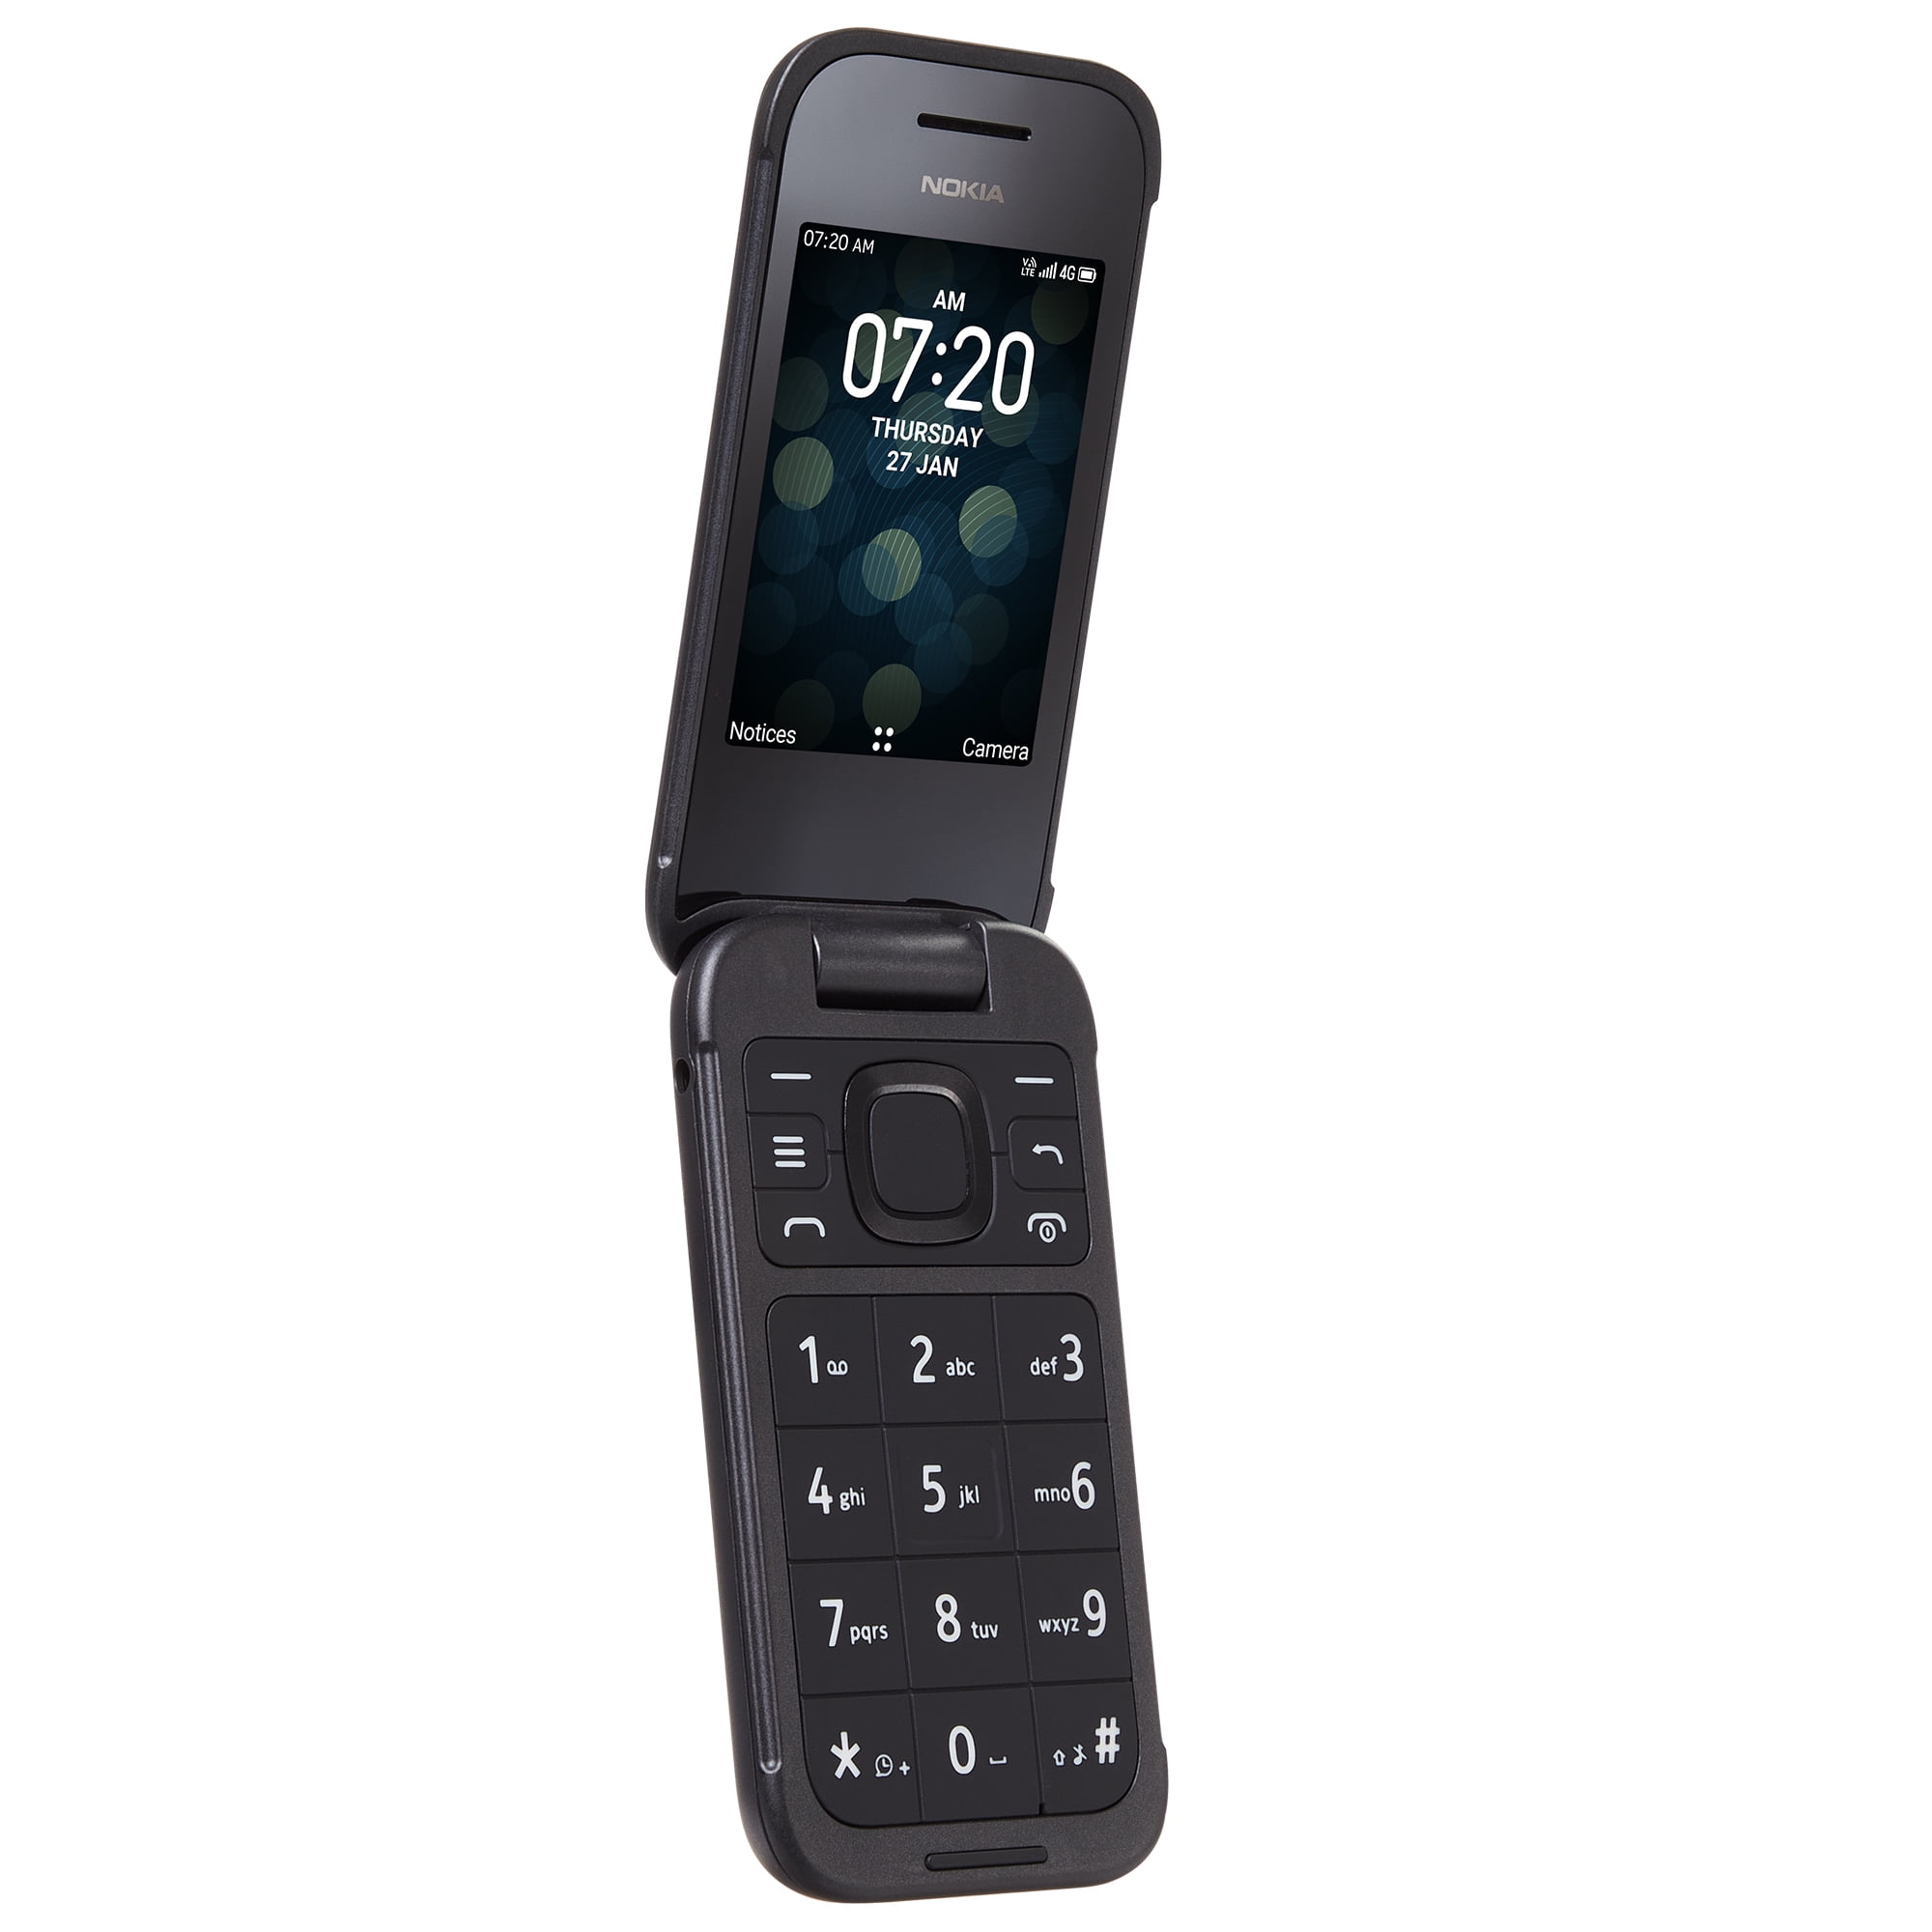 Nokia 2720 Flip ( 4 GB Storage, 512 GB RAM ) Online at Best Price On